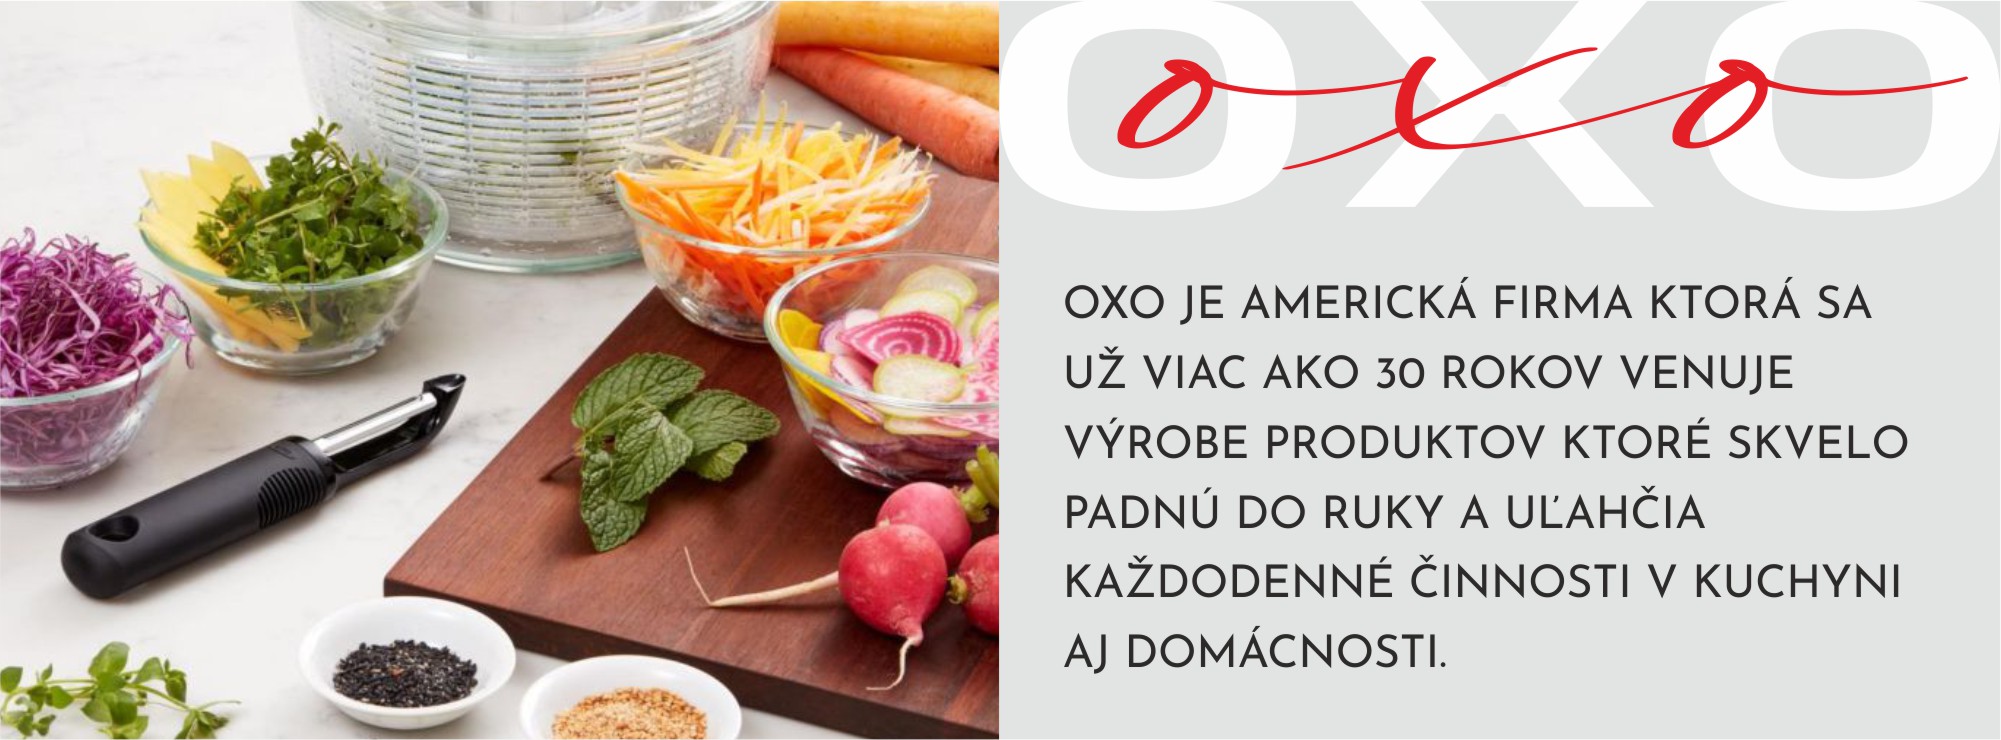 OXO-info-škrabka